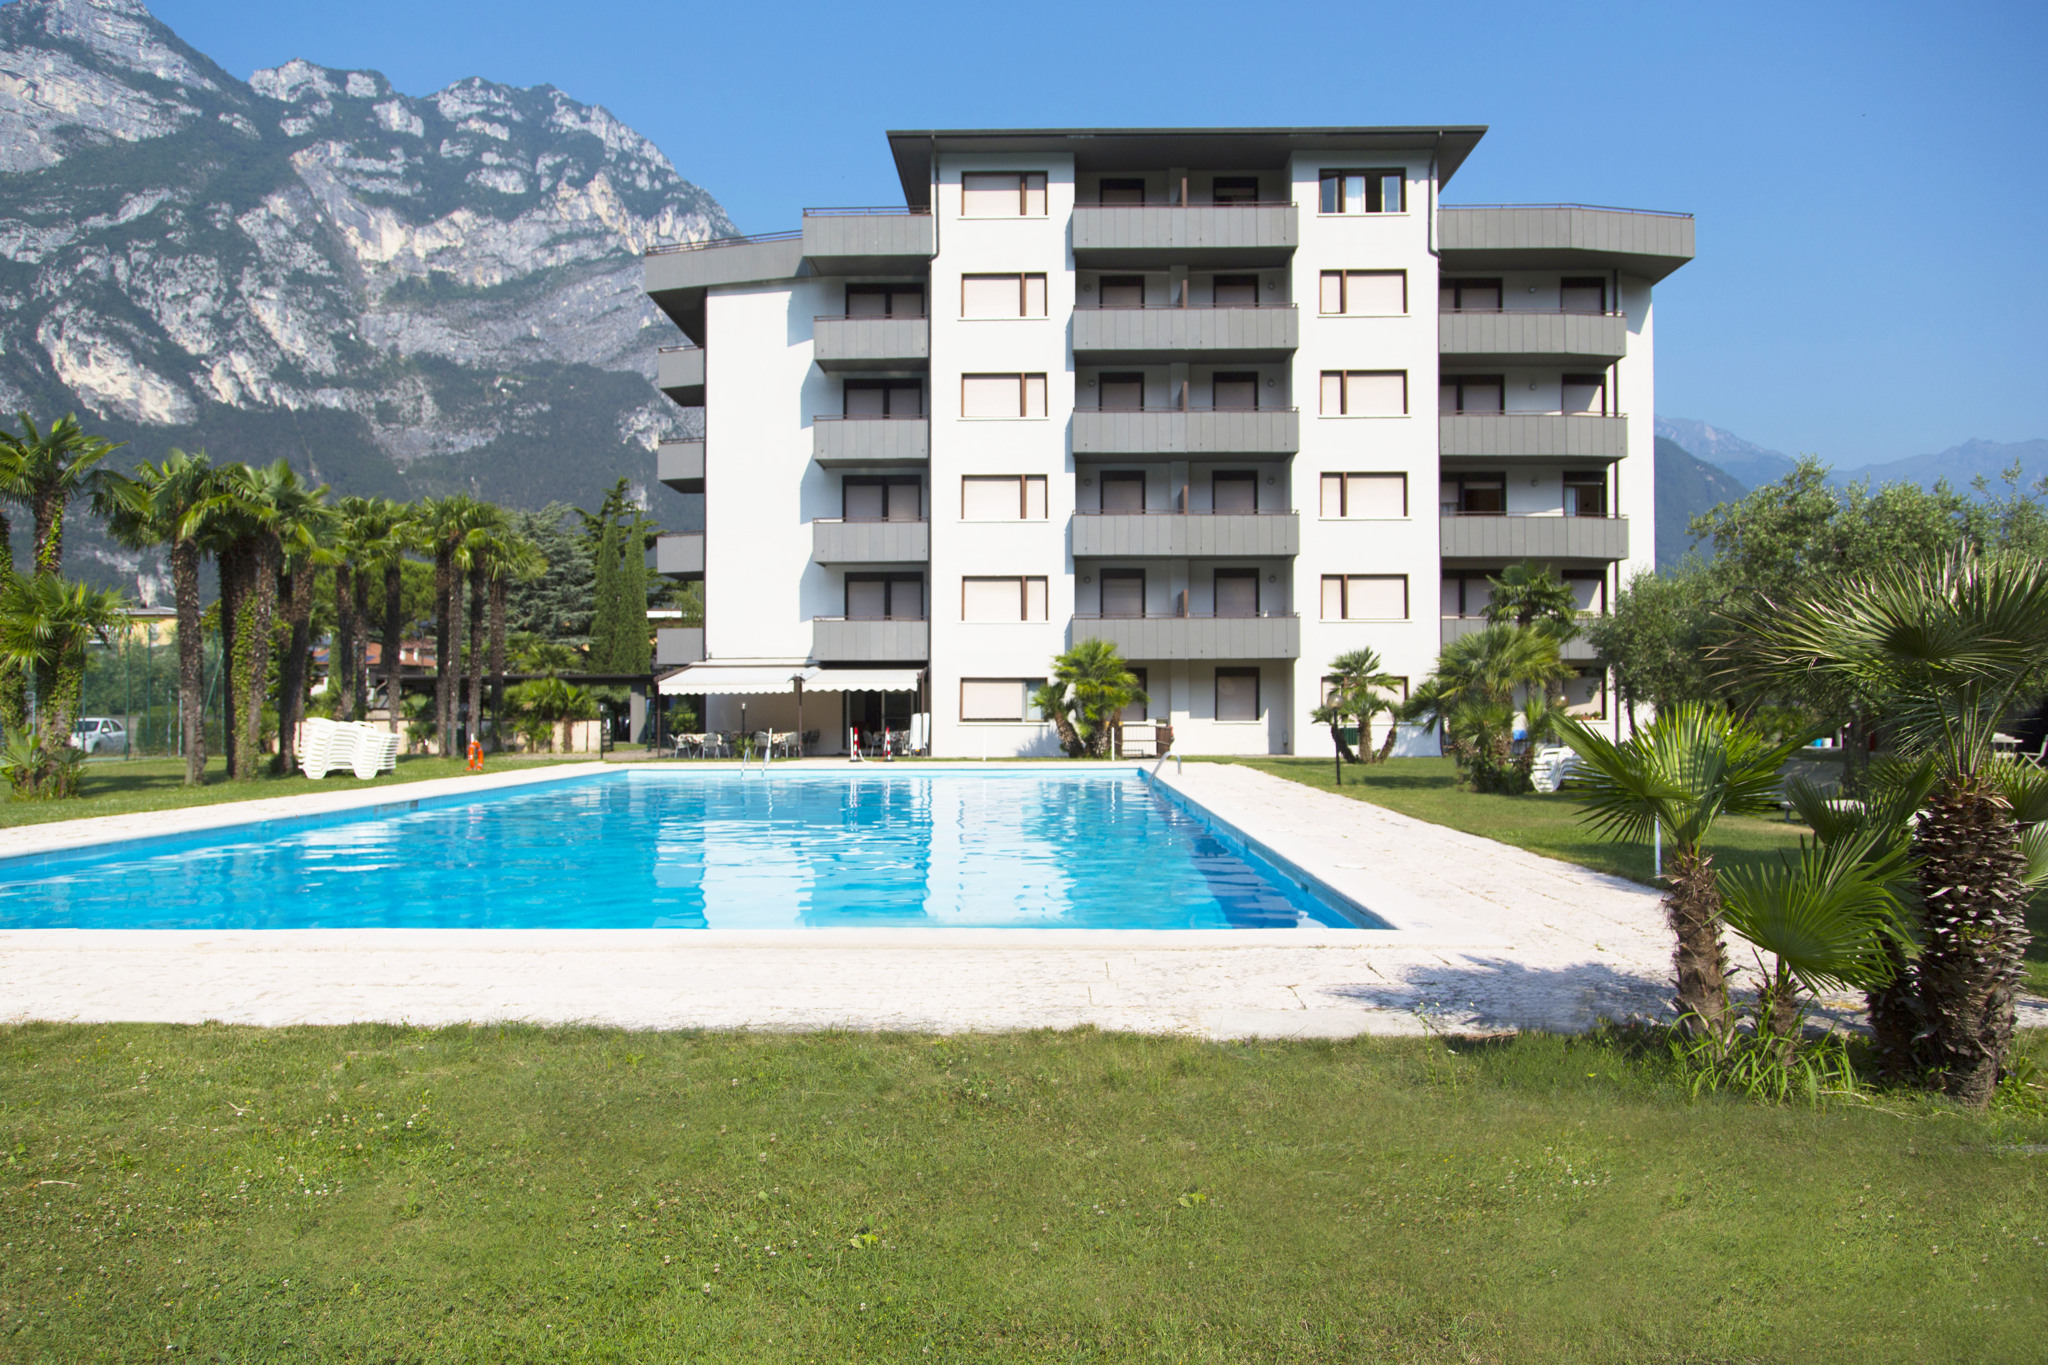 Ferienwohnung mit Balkon und Pool  in Italien